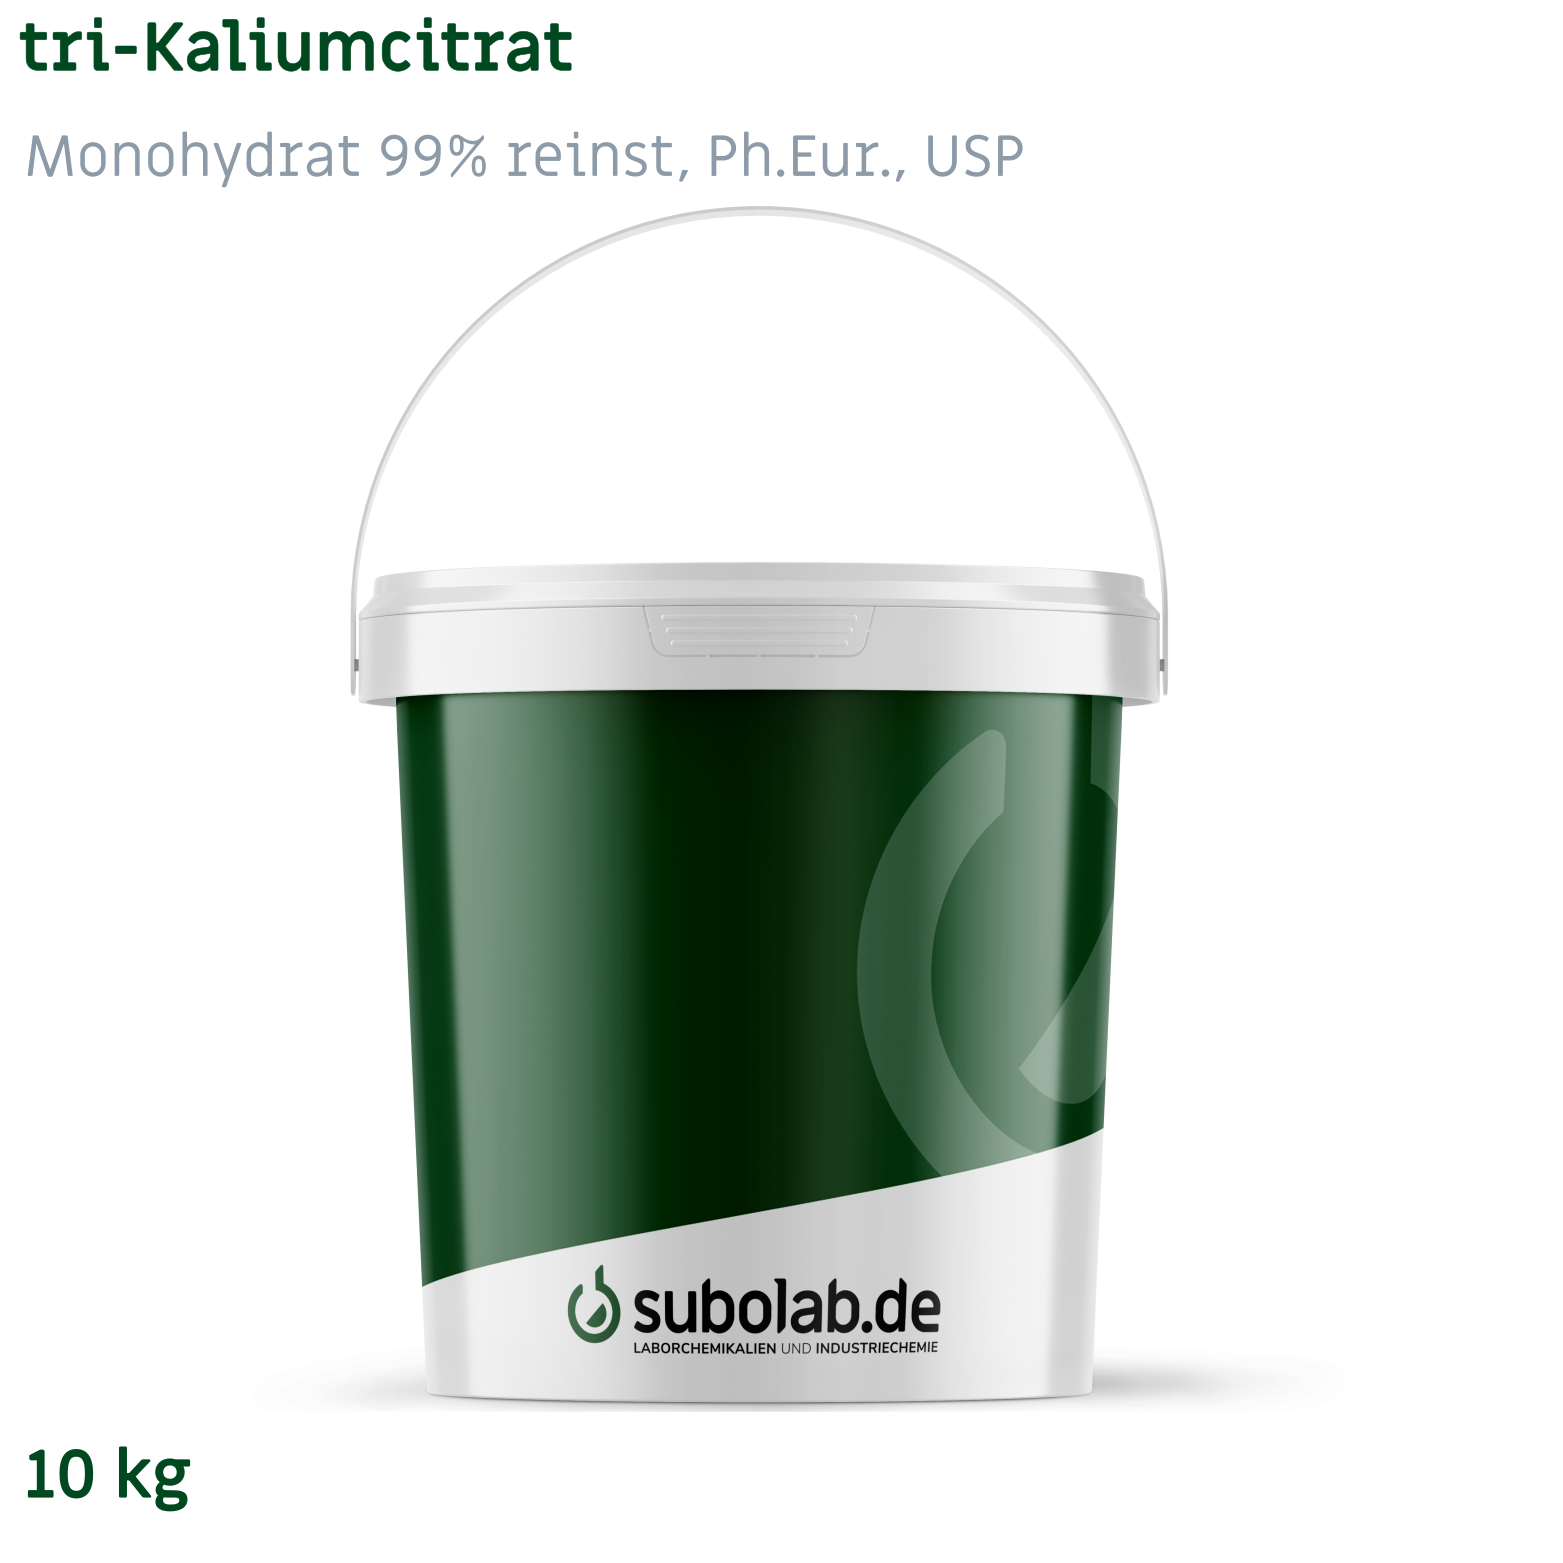 Bild von tri-Kaliumcitrat - Monohydrat 99% reinst, Ph.Eur., USP (10 kg)